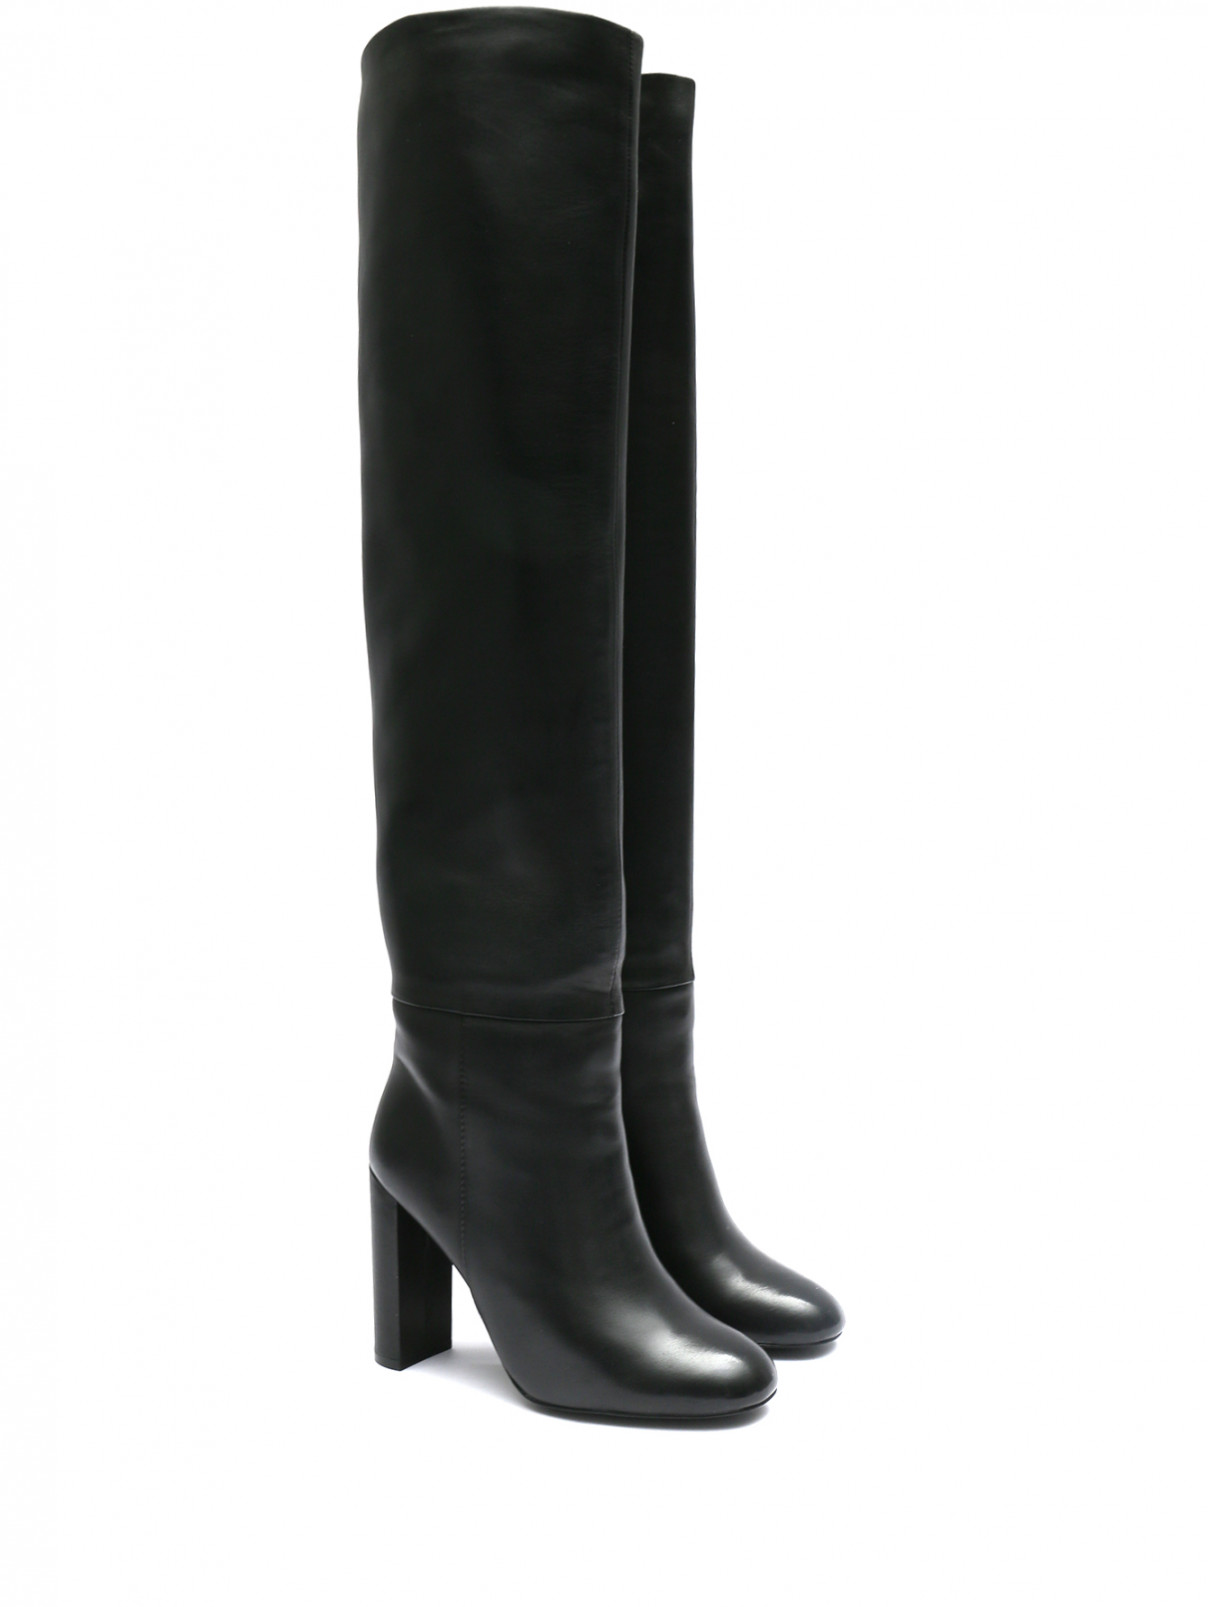 Утепленные ботфорты из гладкой кожи на устойчивом каблуке Gianni Renzi Couture  –  Общий вид  – Цвет:  Черный